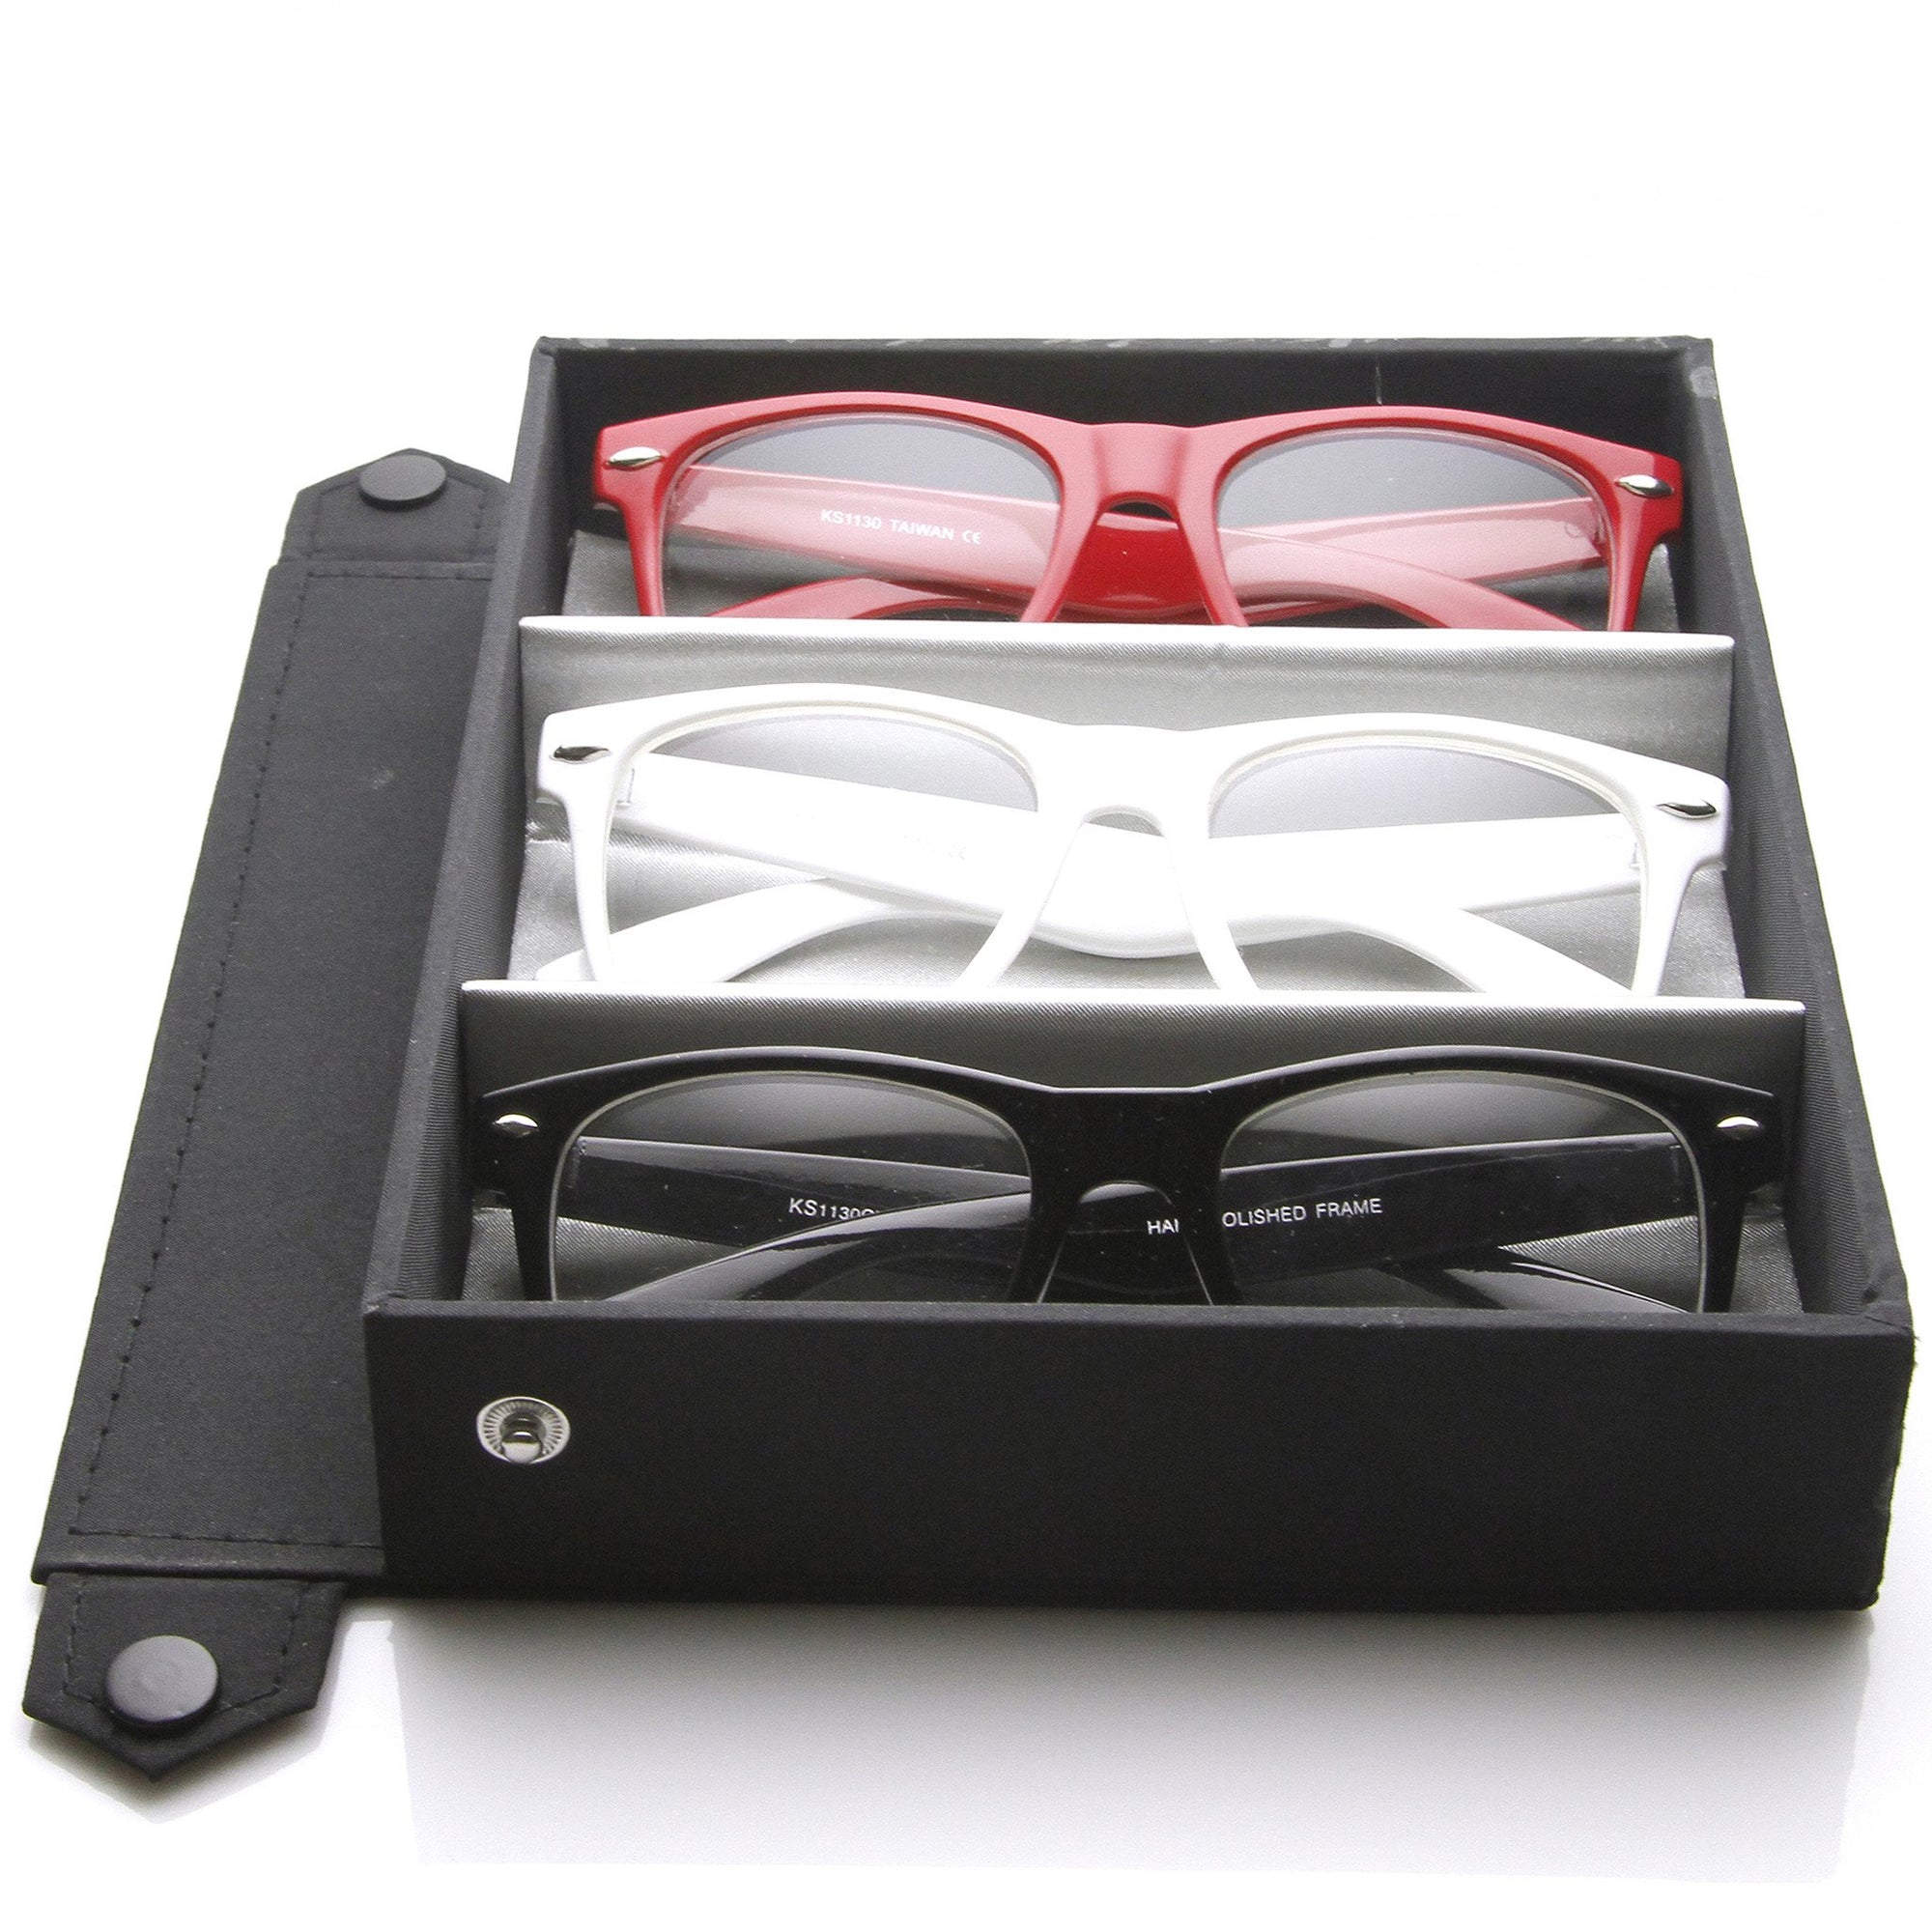 Gafas Nerd de edición limitada con lentes transparentes y montura con cuernos + estuche de viaje 2873